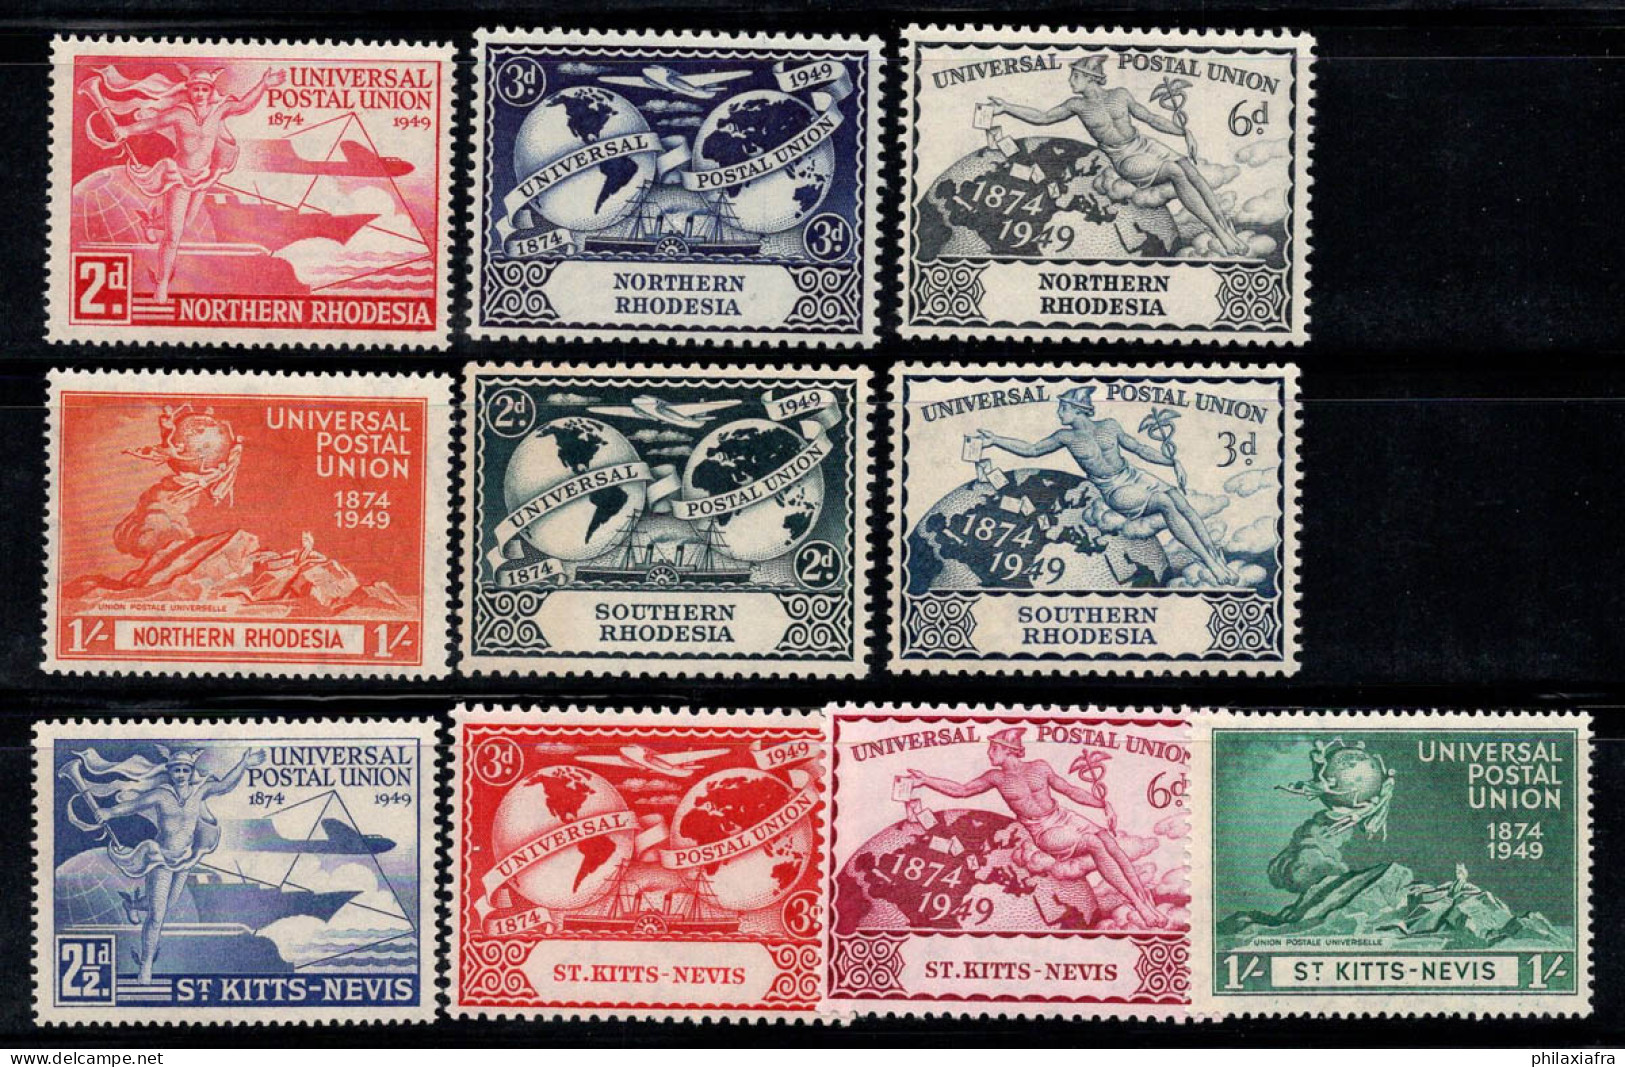 UPU 1949 Neuf ** 80% Rhodésie, Saint-Kitts-Nevis - UPU (Universal Postal Union)